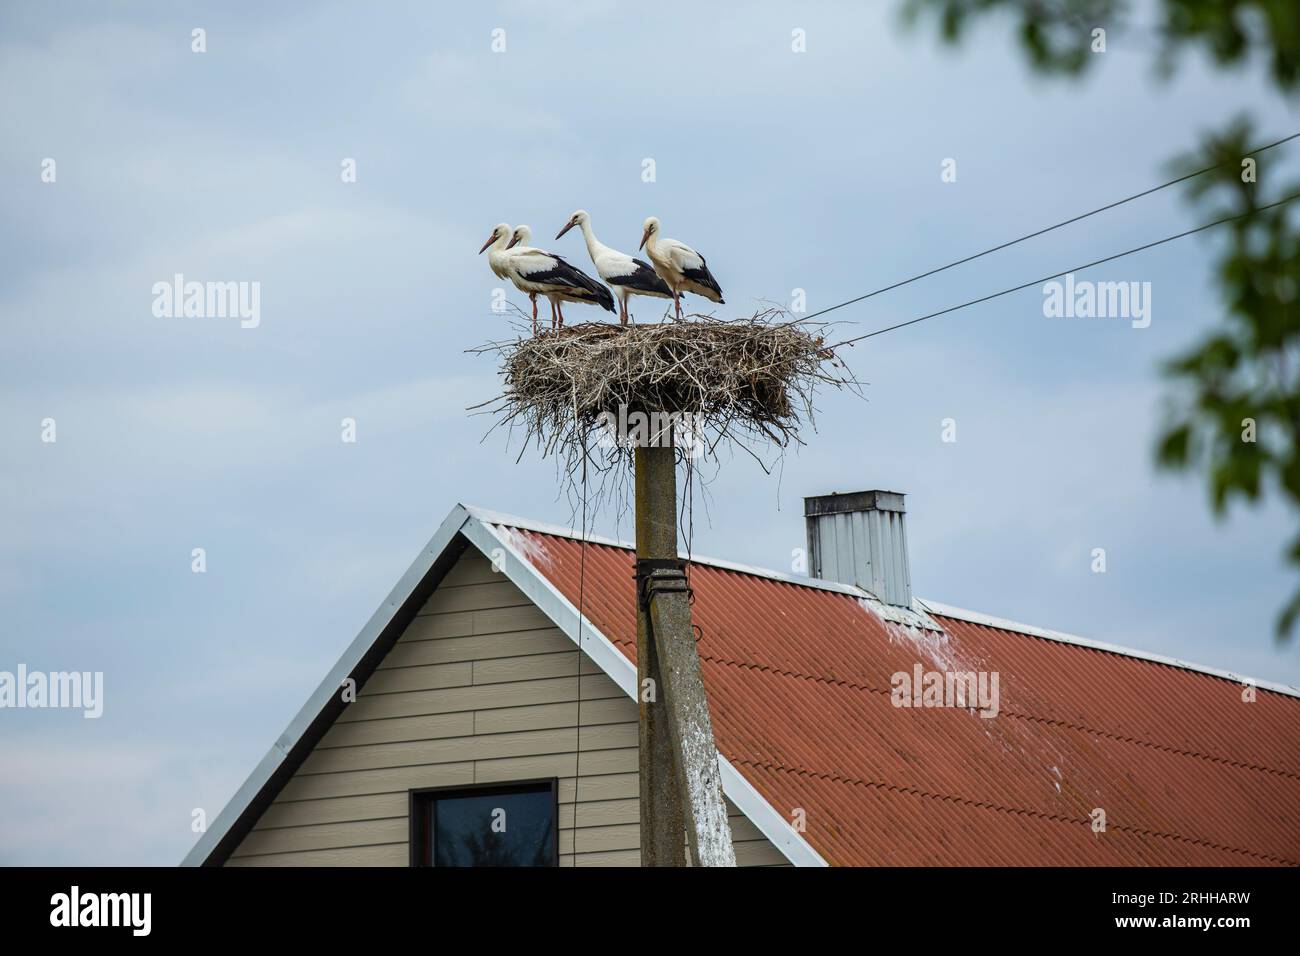 In der malerischen Landschaft Litauens erhebt sich ein alter Strommast gegen den Himmel. Anstatt jedoch lediglich als Übertragungsmittel für Elektrizi Stock Photo